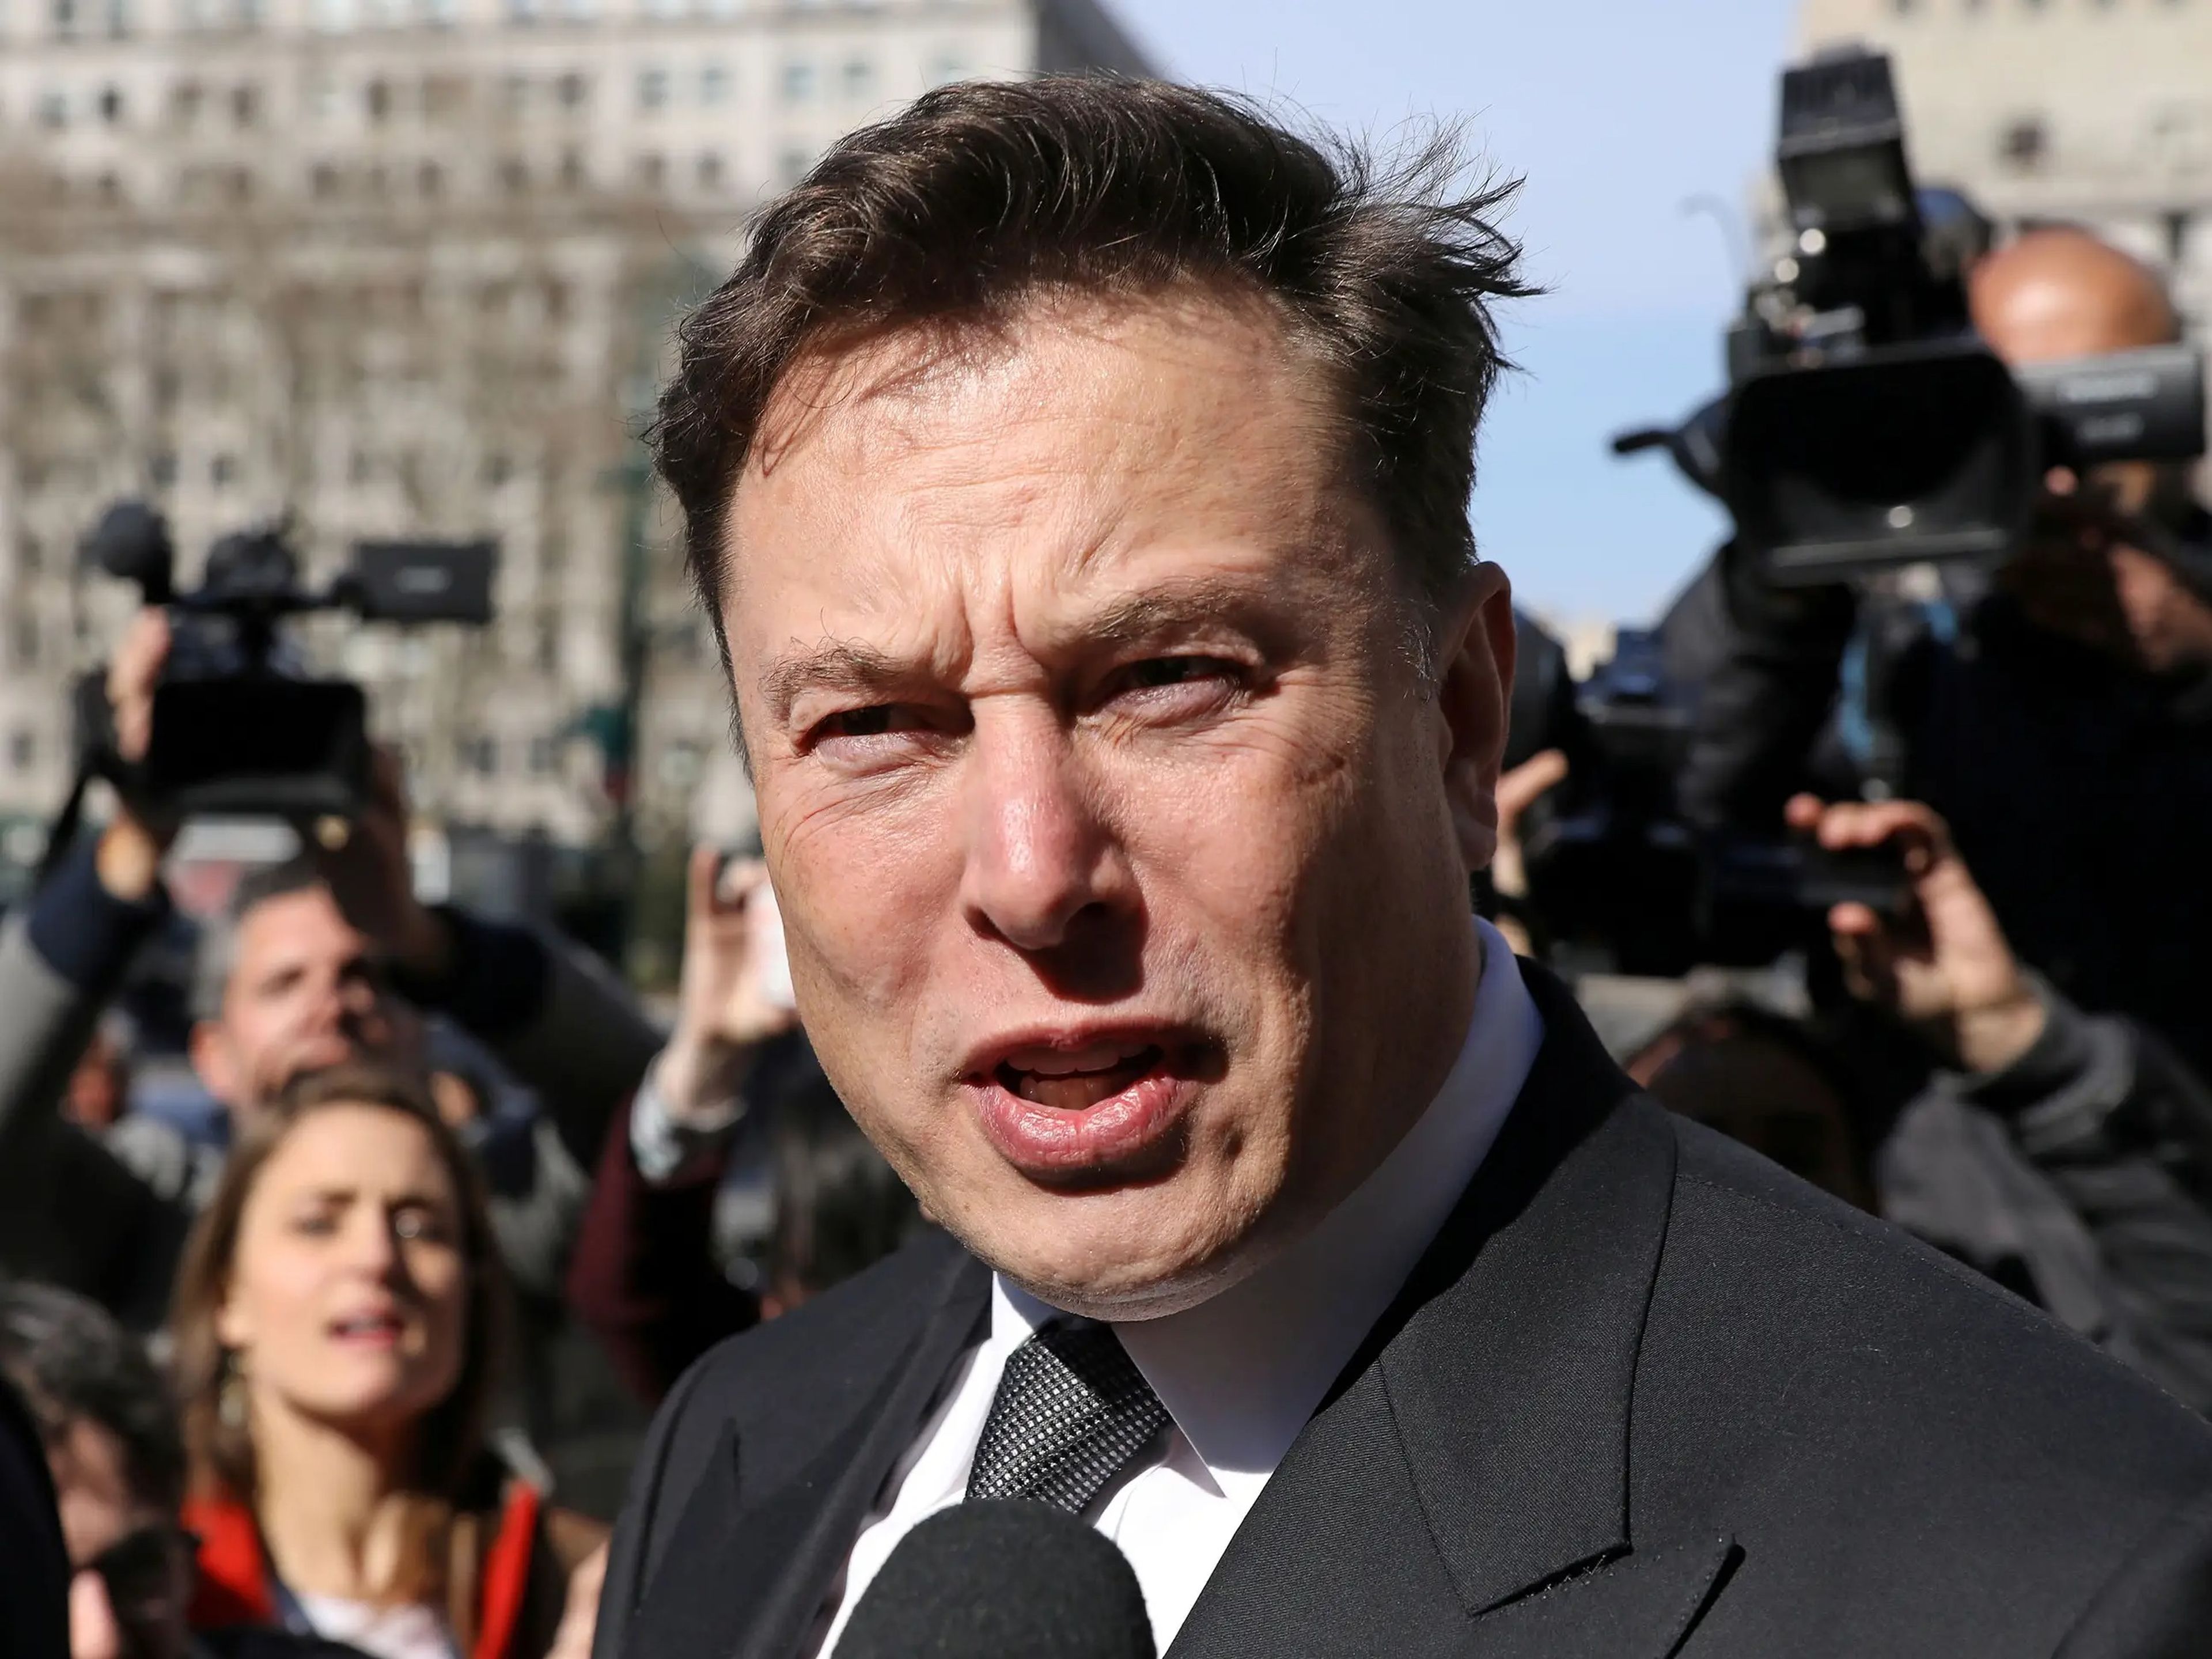 El CEO de Tesla, Elon Musk, abandona el tribunal federal de Manhattan después de una audiencia sobre su acuerdo de fraude con la Comisión de Bolsa y Valores (SEC) en la ciudad de Nueva York, Estados Unidos, el 4 de abril de 2019.